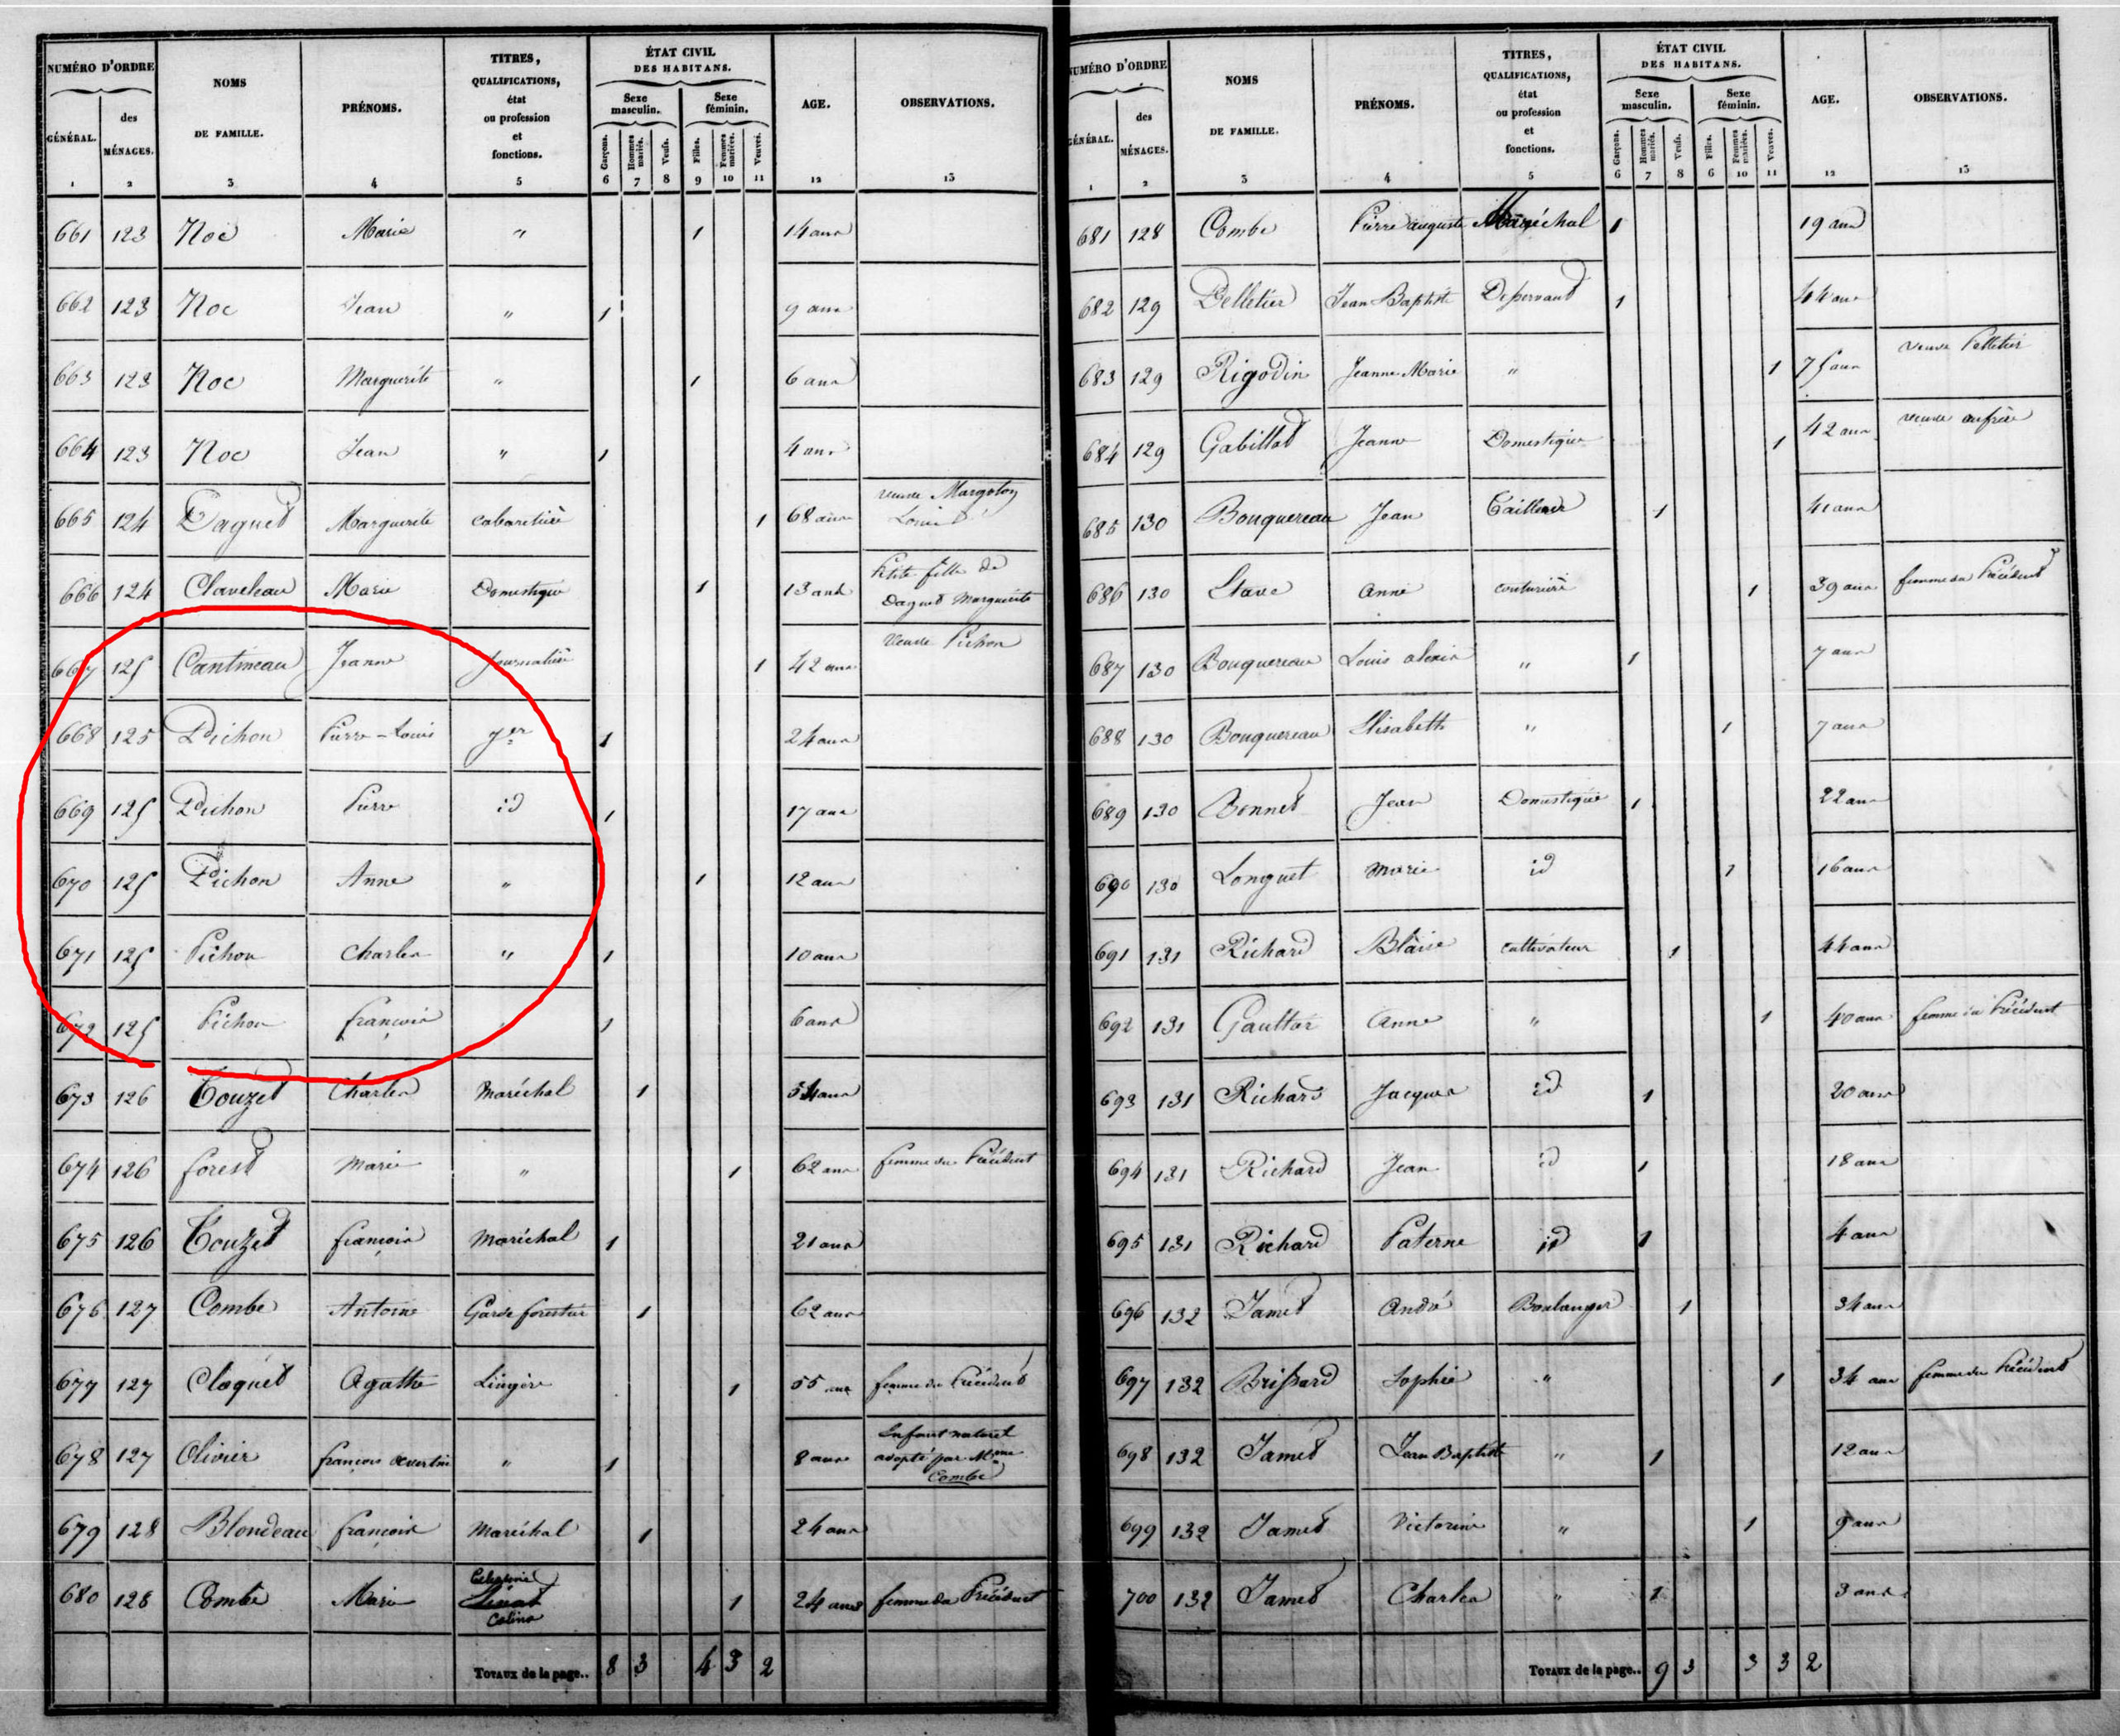 Registre du recensement de l’année 1836 du village de Bommiers (Indre), avec les aïeux de Marcelle au grand complet résidant tous sous le même toit.<br><br>